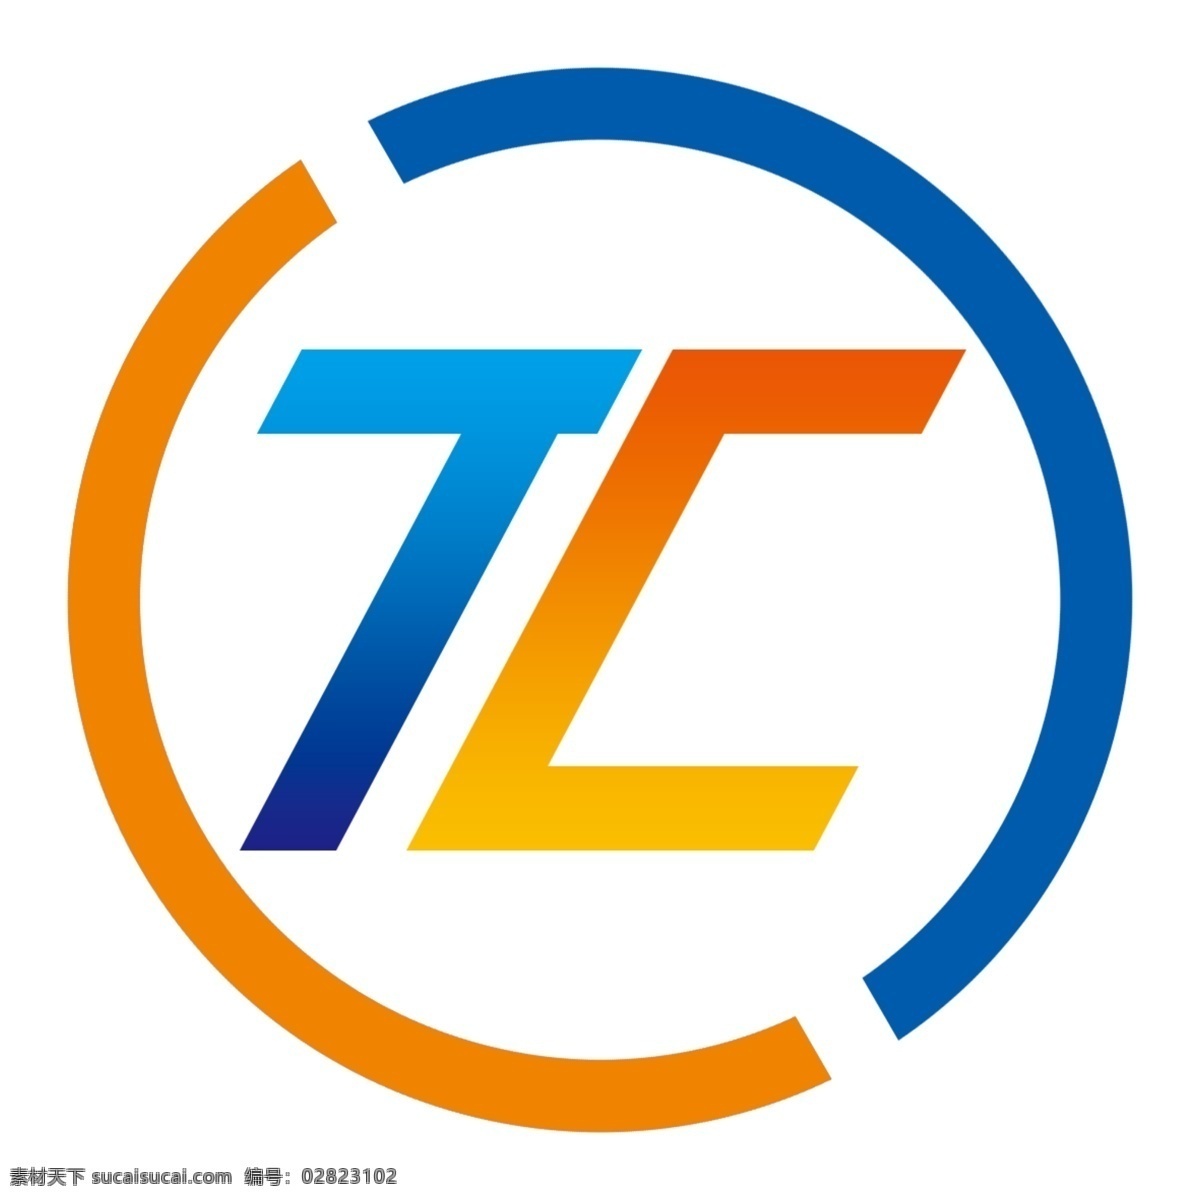 tc变形 企业logo 简约logo tclogo 蓝橙色渐变 标志图标 企业 logo 标志